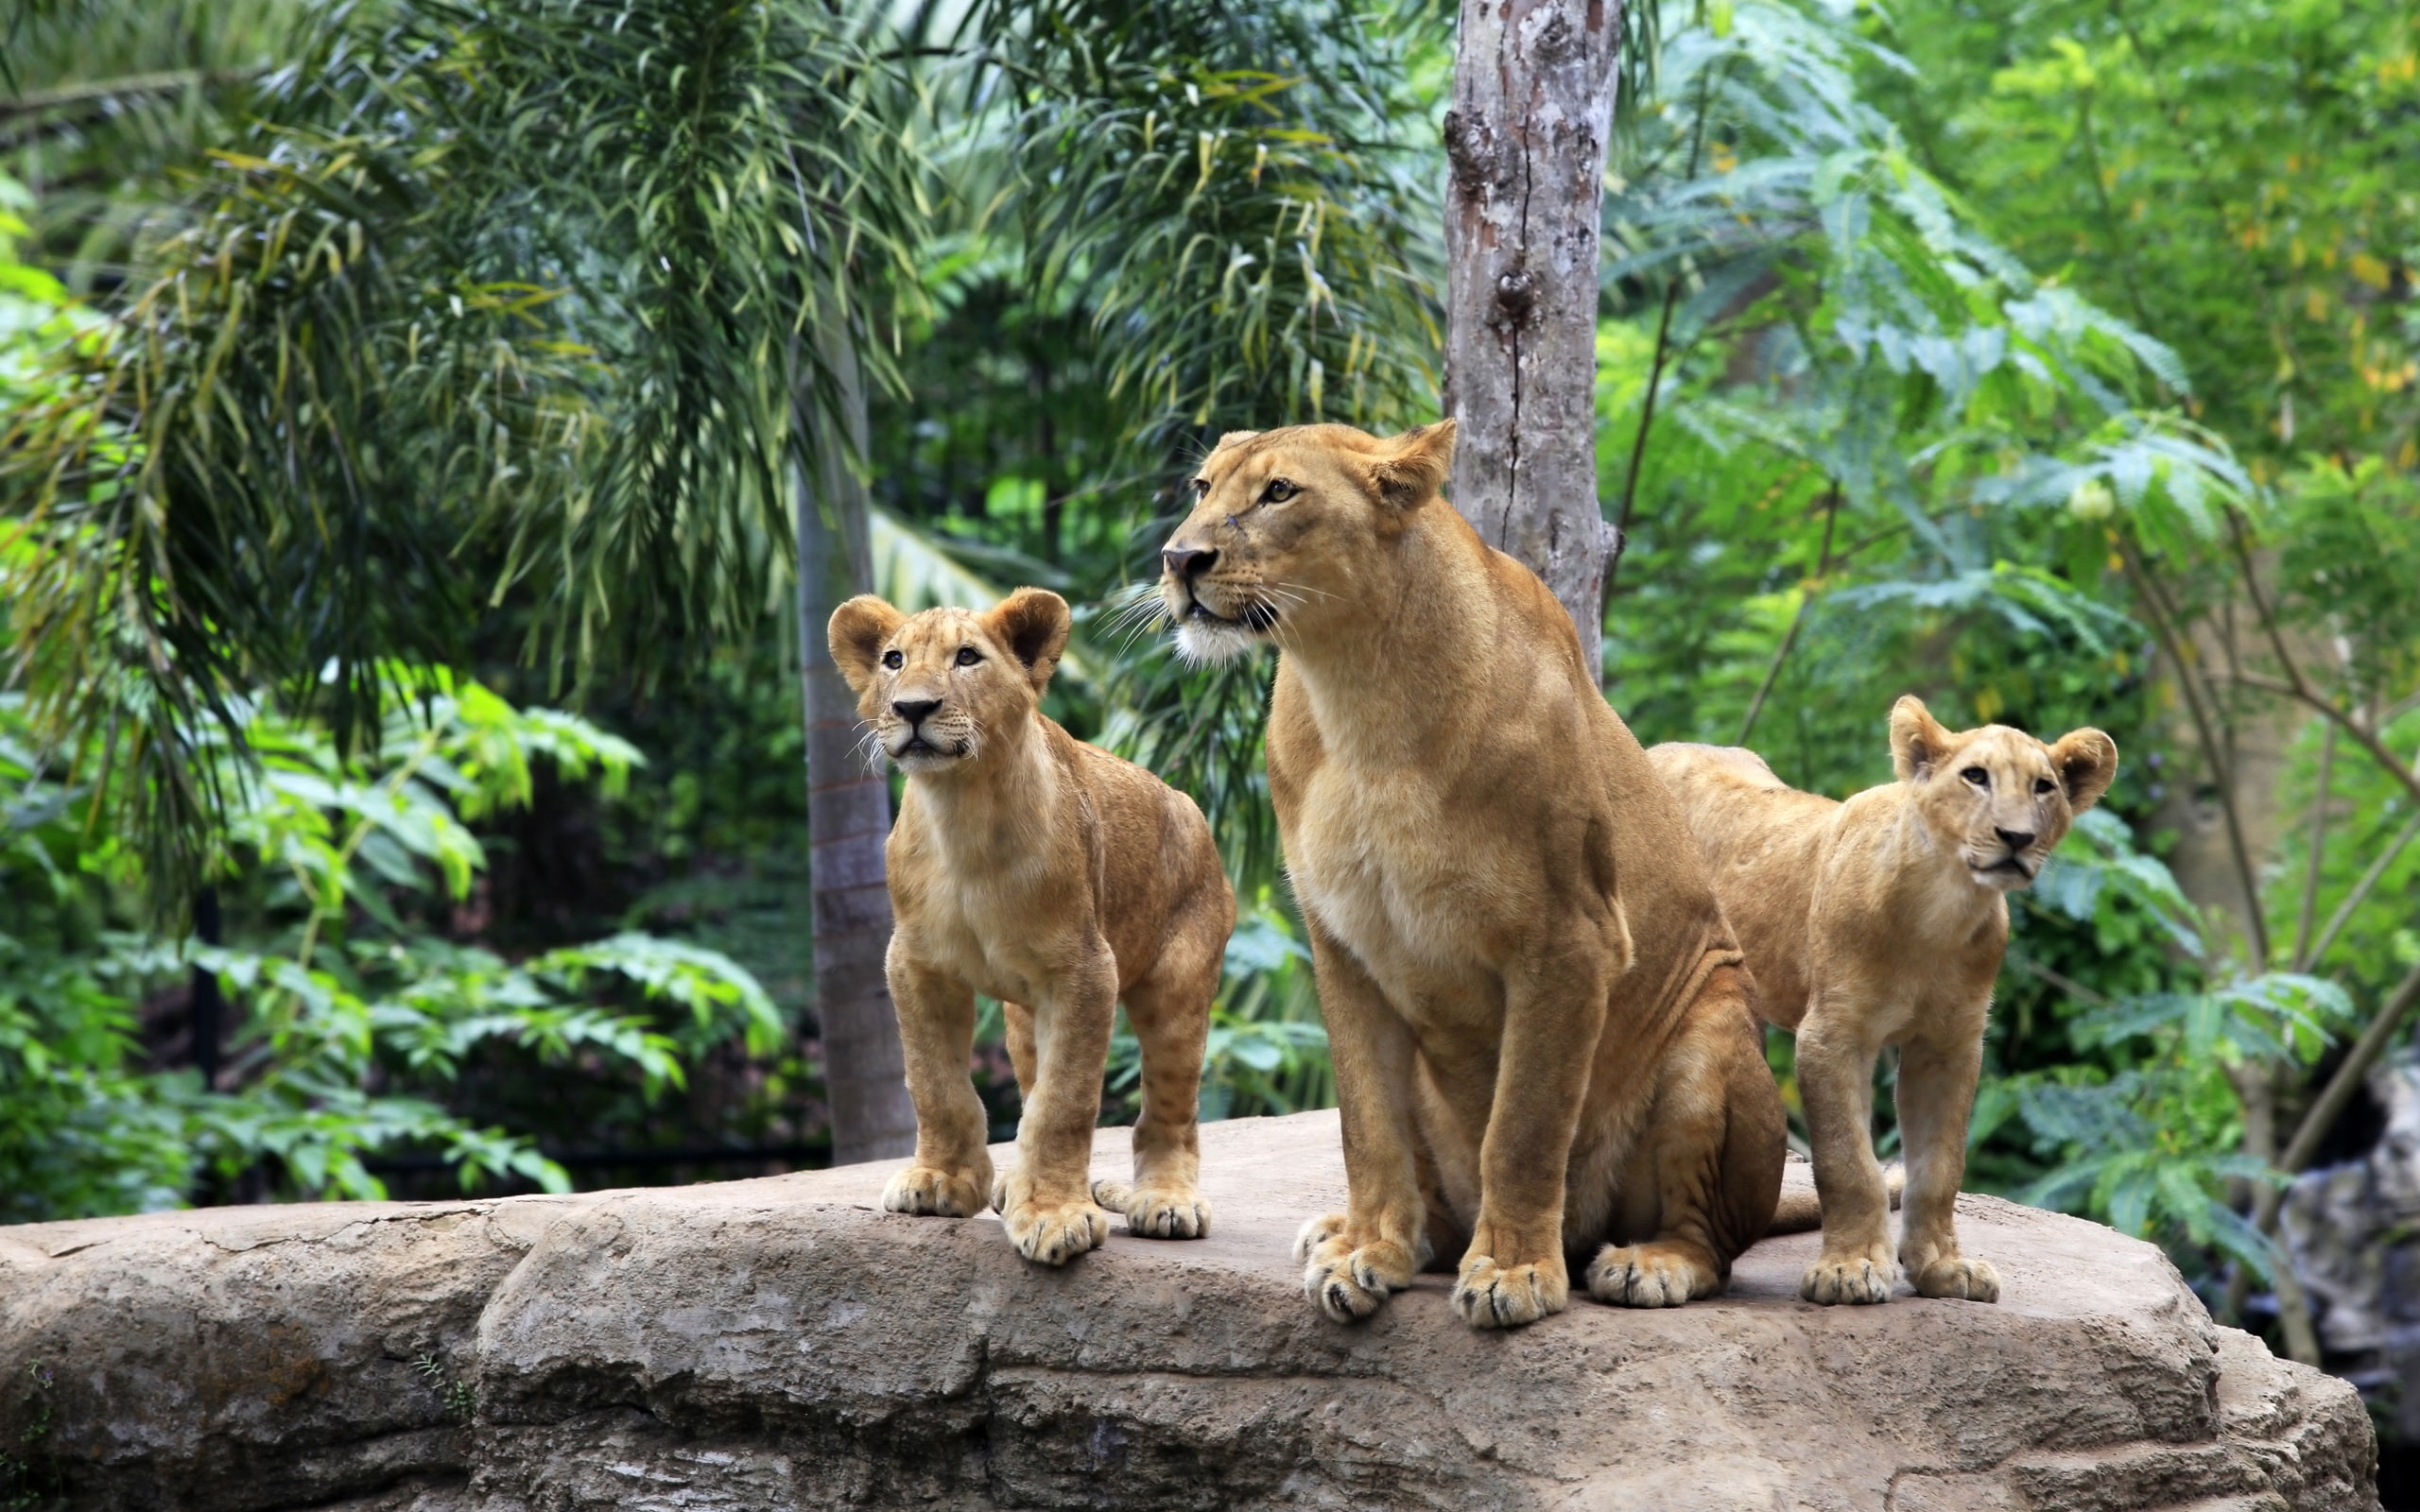 Lion family, lioness, lion cubs